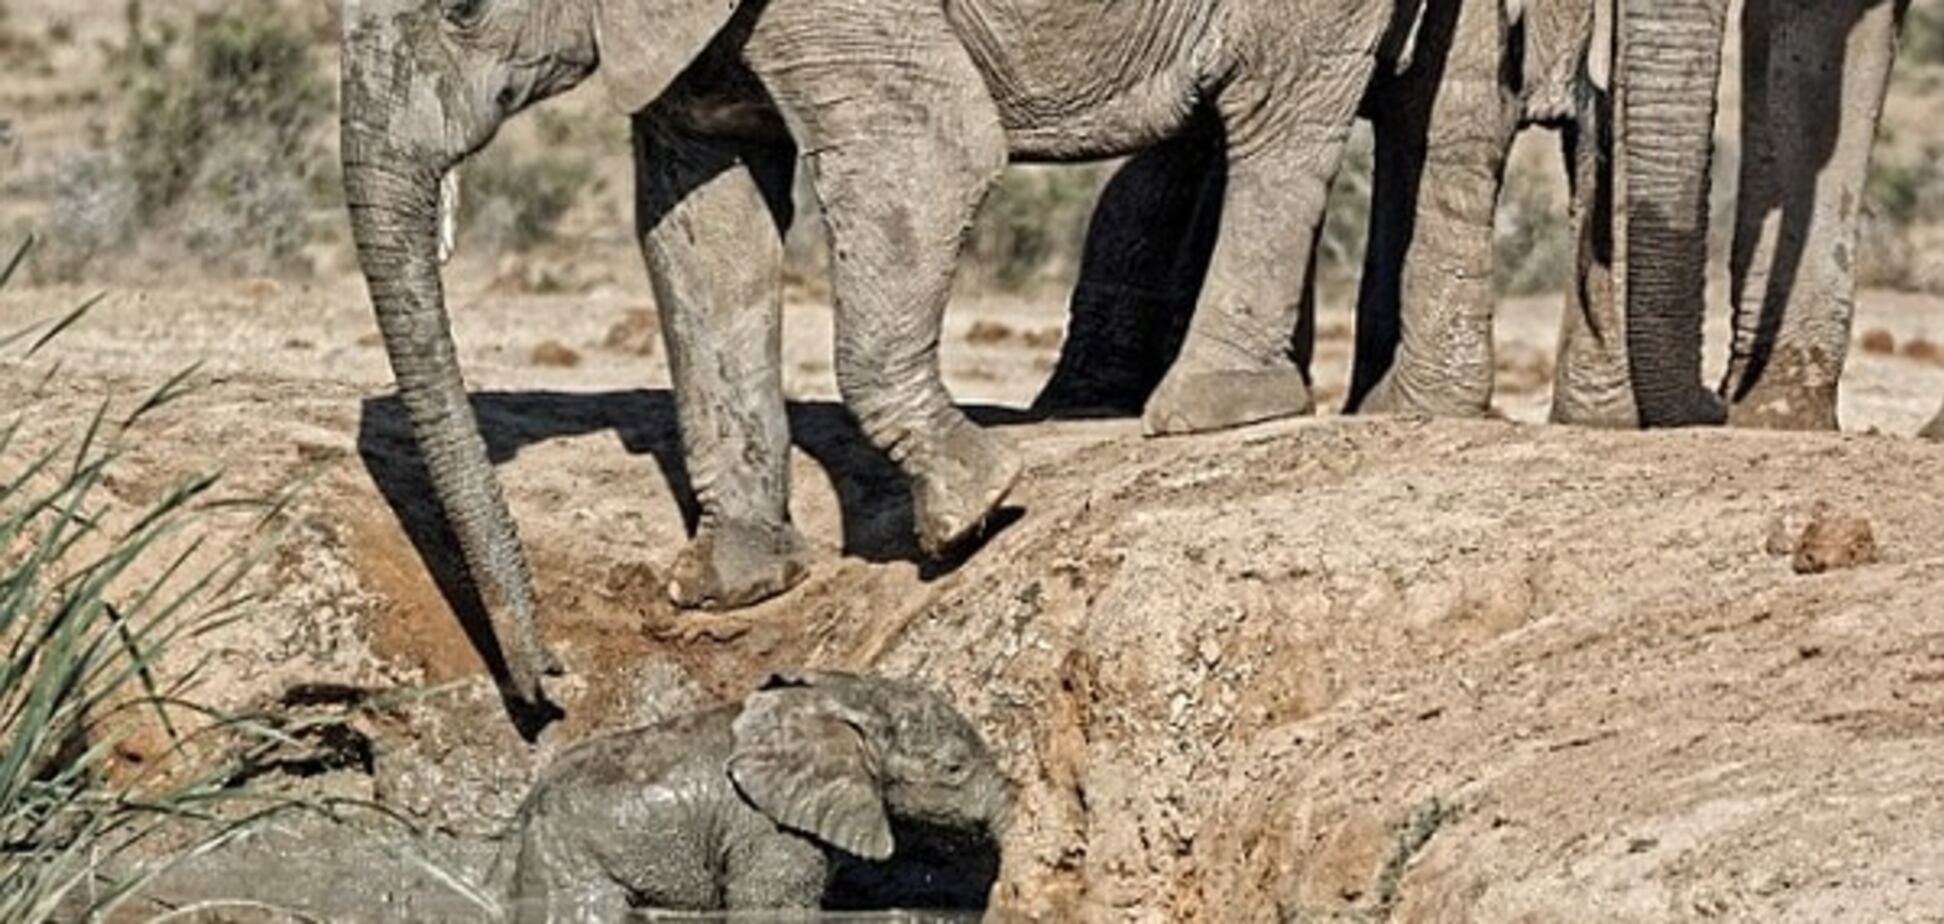 Слониха героически спасла свое дитя: трогательное видео